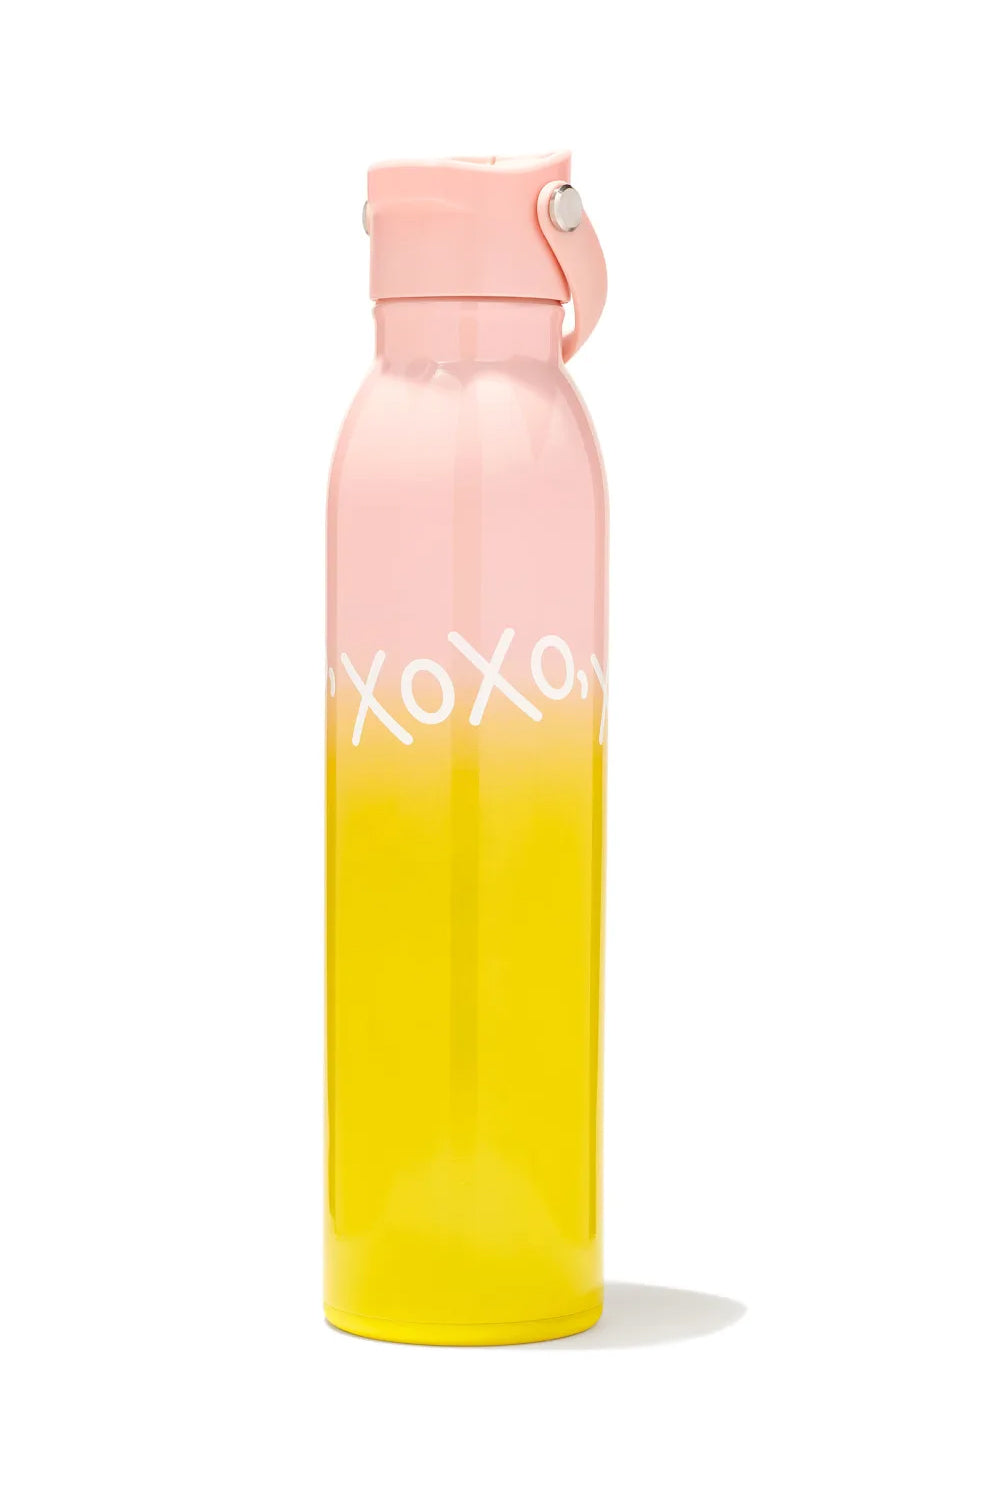 Kendra Scott: XOXO Water Bottle - Pink and Yellow Ombre | Makk Fashions